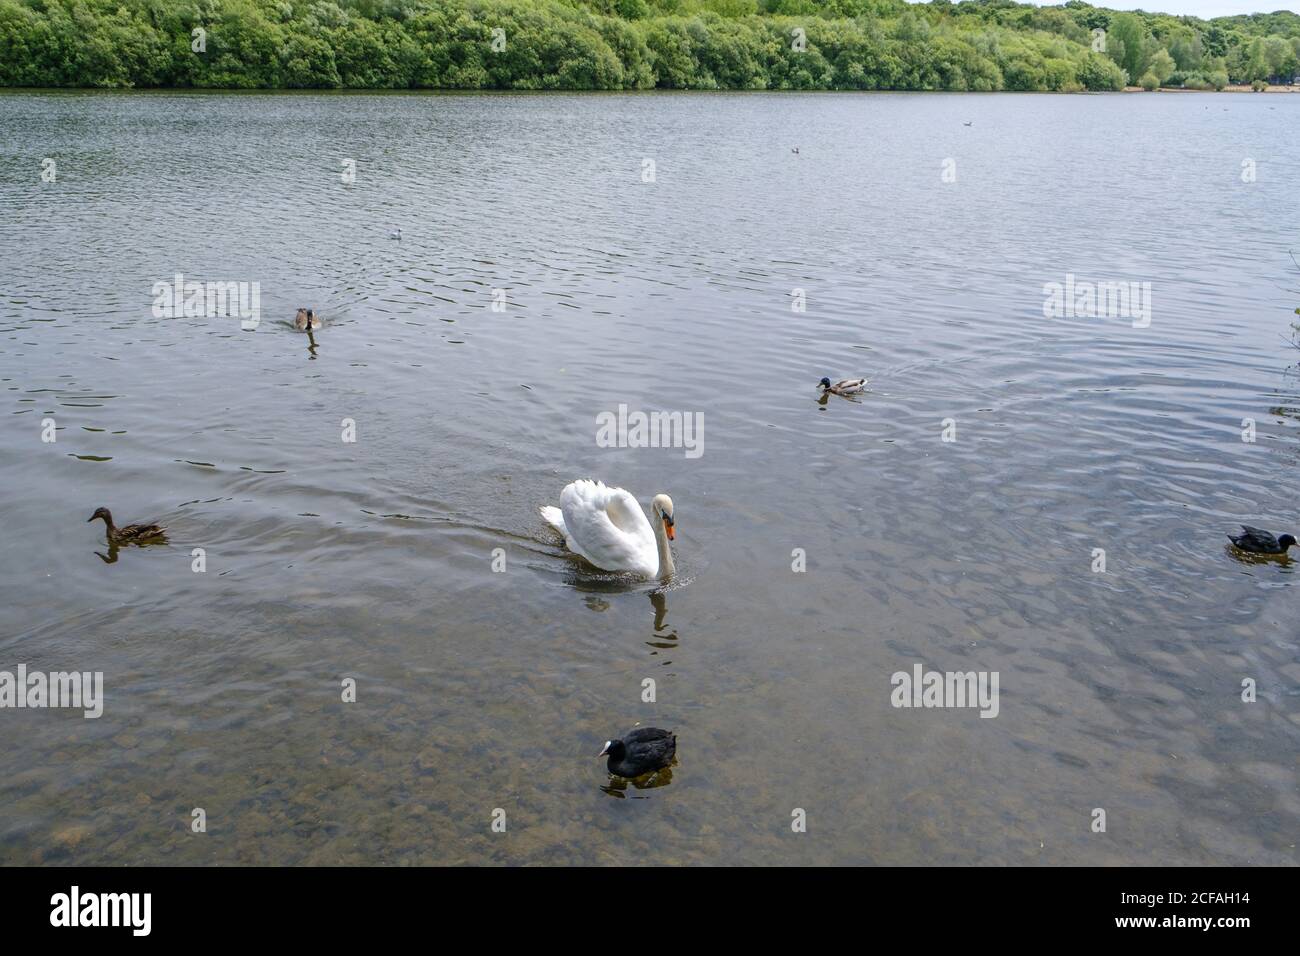 Un cygne muet, des cuisiniers, des canards colverts mâles et femelles nagent dans le réservoir de Ruislip Lido, un lac de 60 hectares, Ruislip Hillingdon, nord-ouest de Londres, Angleterre, Royaume-Uni. Banque D'Images